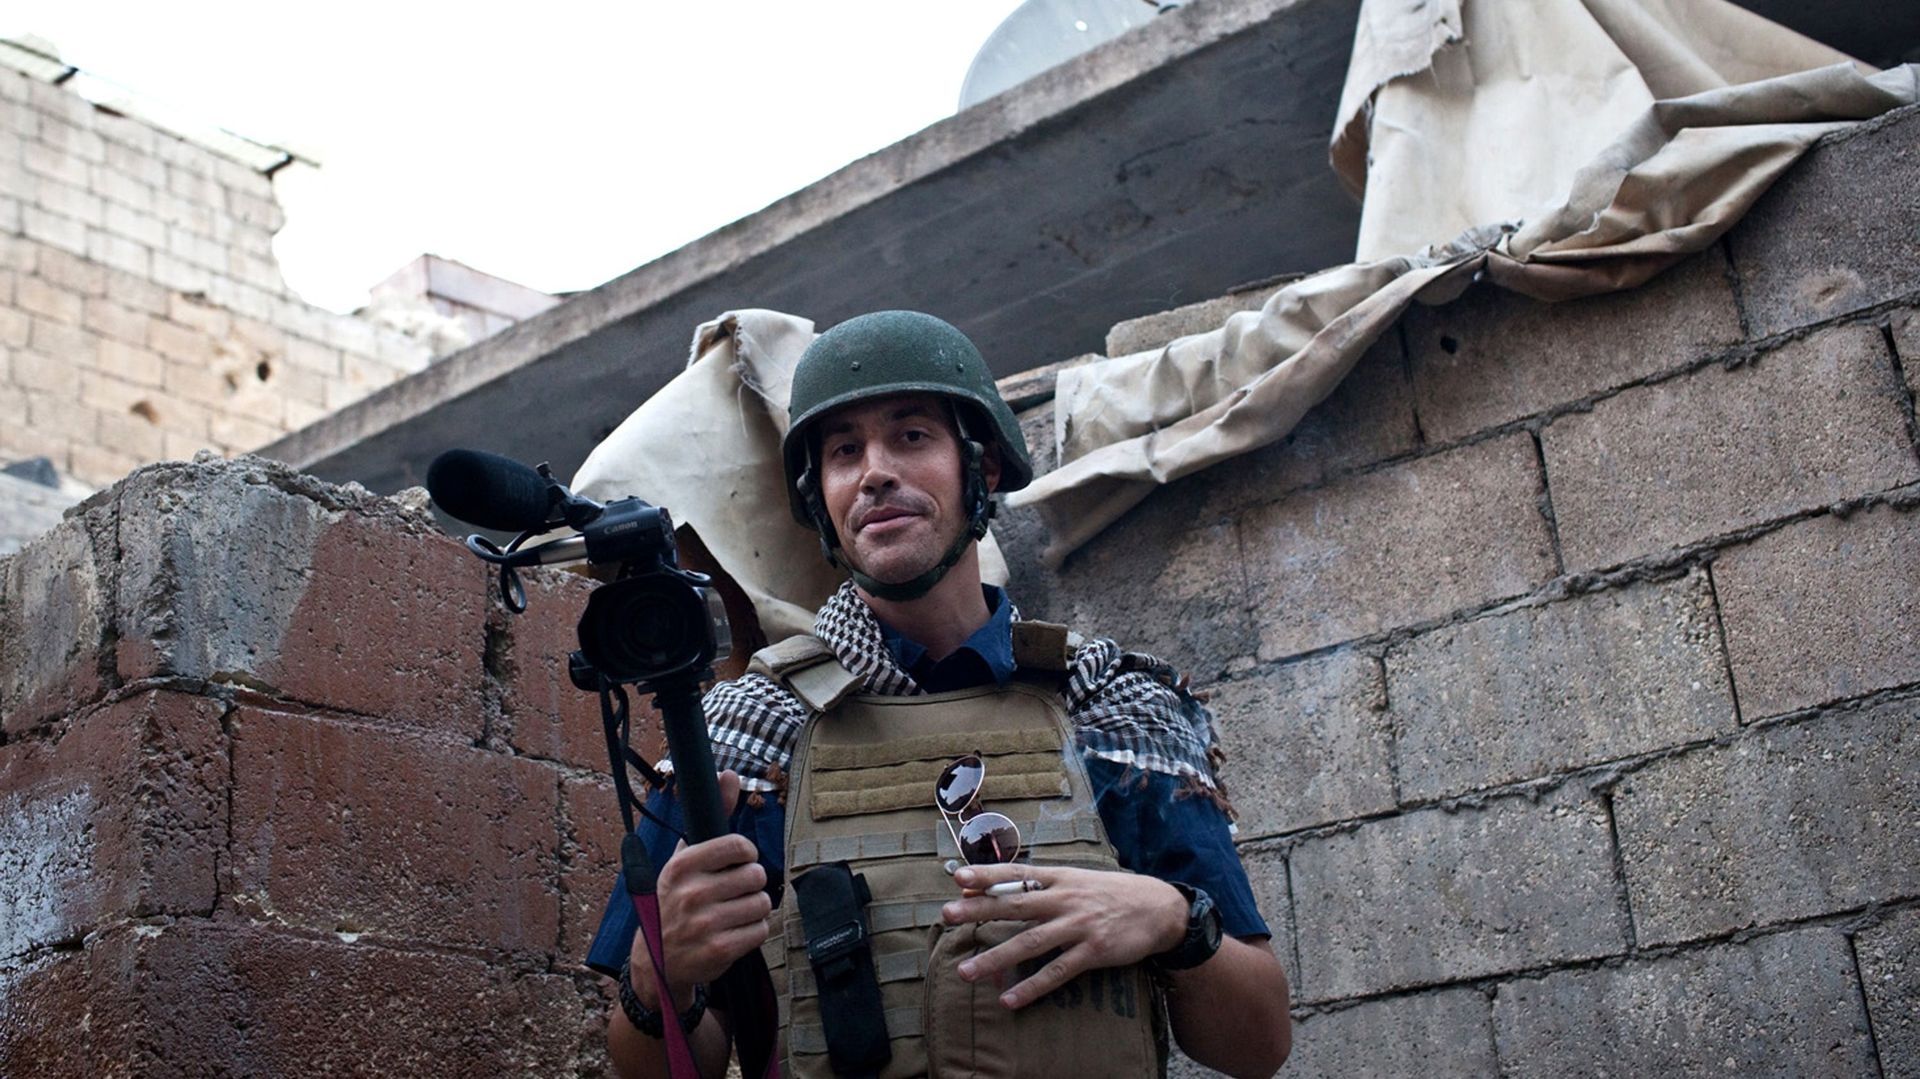 Le "meurtre barbare" de J. Foley, une "attaque terroriste contre les USA"